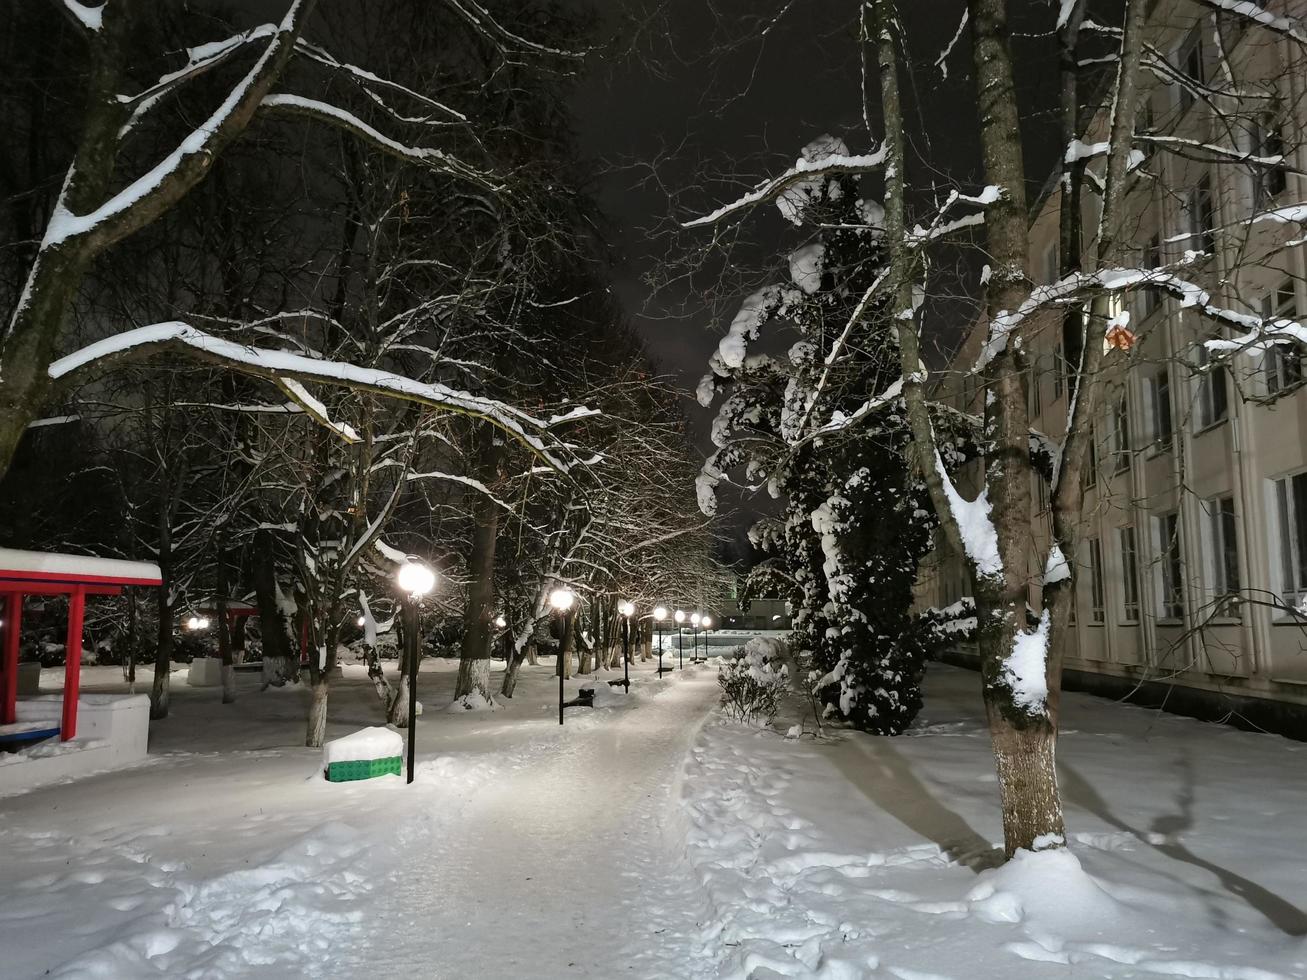 winterpark 's nachts bomen in de sneeuwsteeg met lantaarns foto